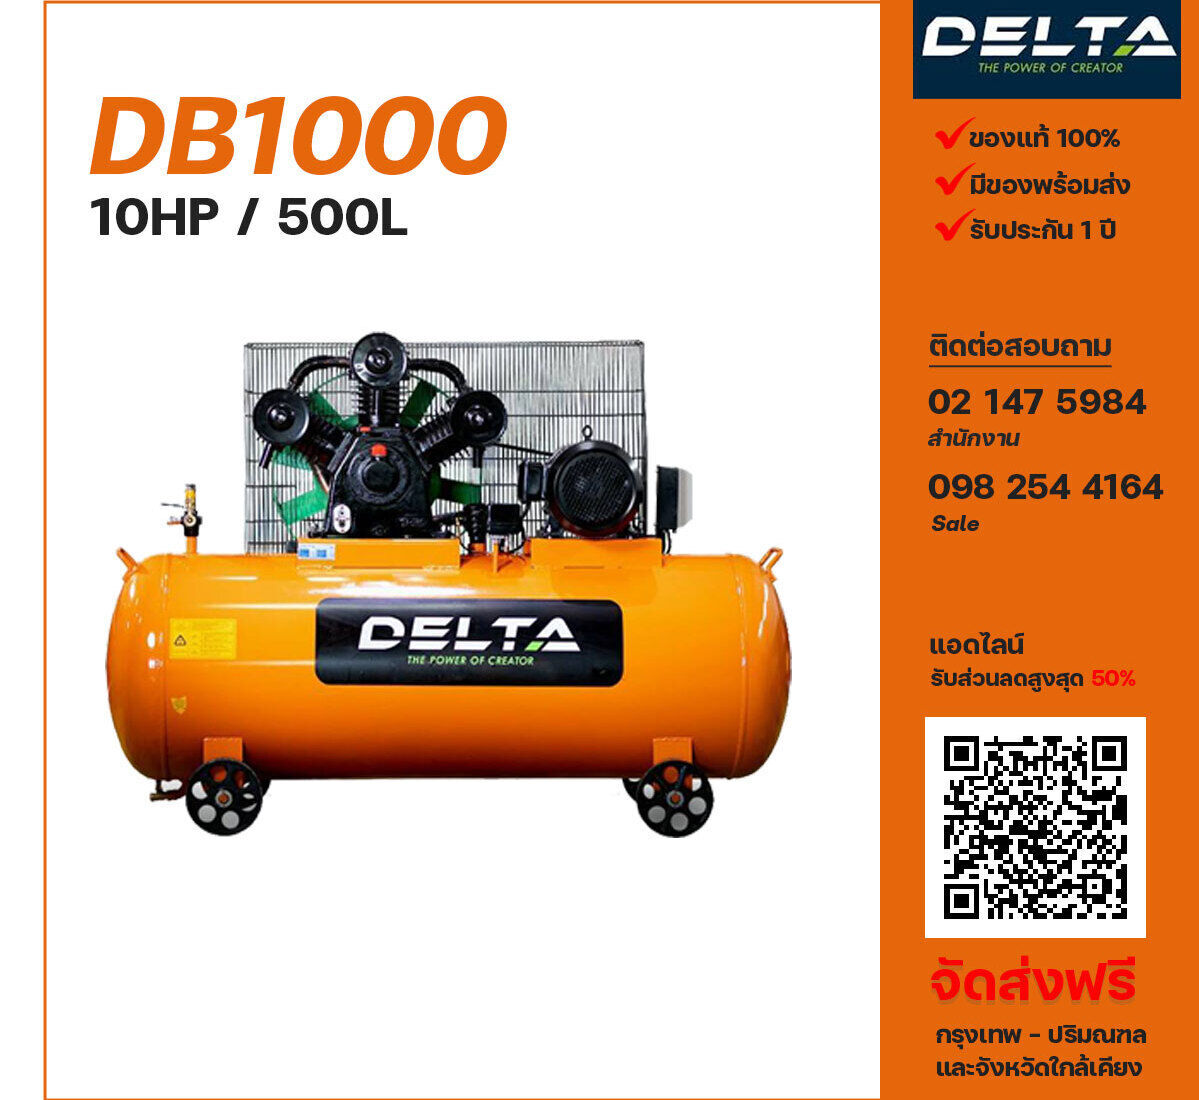 ปั๊มลมเดลต้า DELTA DB1000 380V ปั๊มลมลูกสูบ ขนาด 3 สูบ 10 แรงม้า 500 ลิตร DELTA พร้อมมอเตอร์ ไฟ 380V ส่งฟรี กรุงเทพฯ-ปริมณฑล รับประกัน 1 ปี